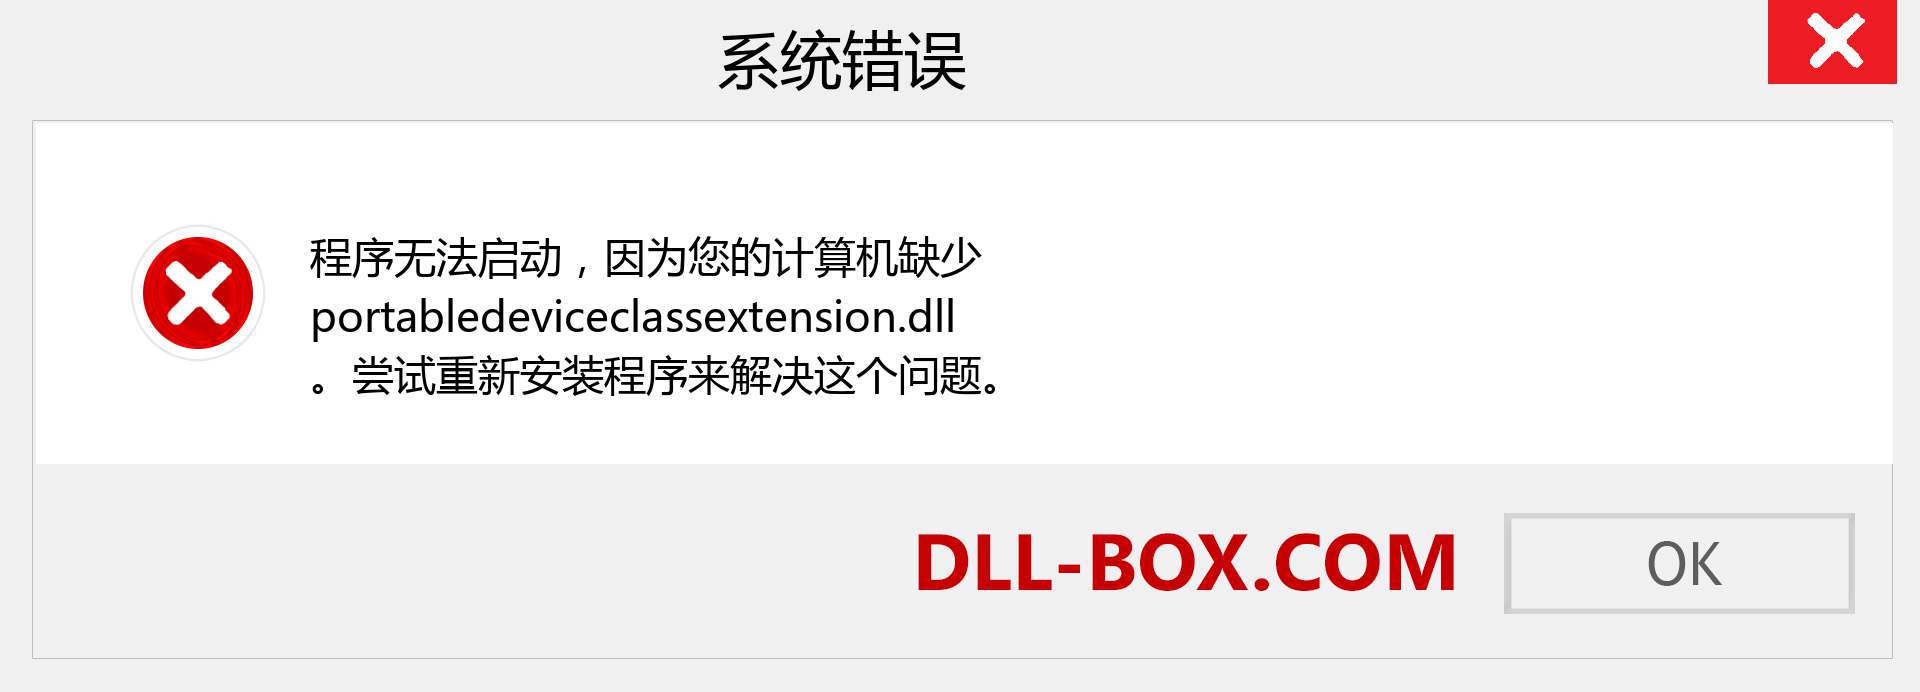 portabledeviceclassextension.dll 文件丢失？。 适用于 Windows 7、8、10 的下载 - 修复 Windows、照片、图像上的 portabledeviceclassextension dll 丢失错误